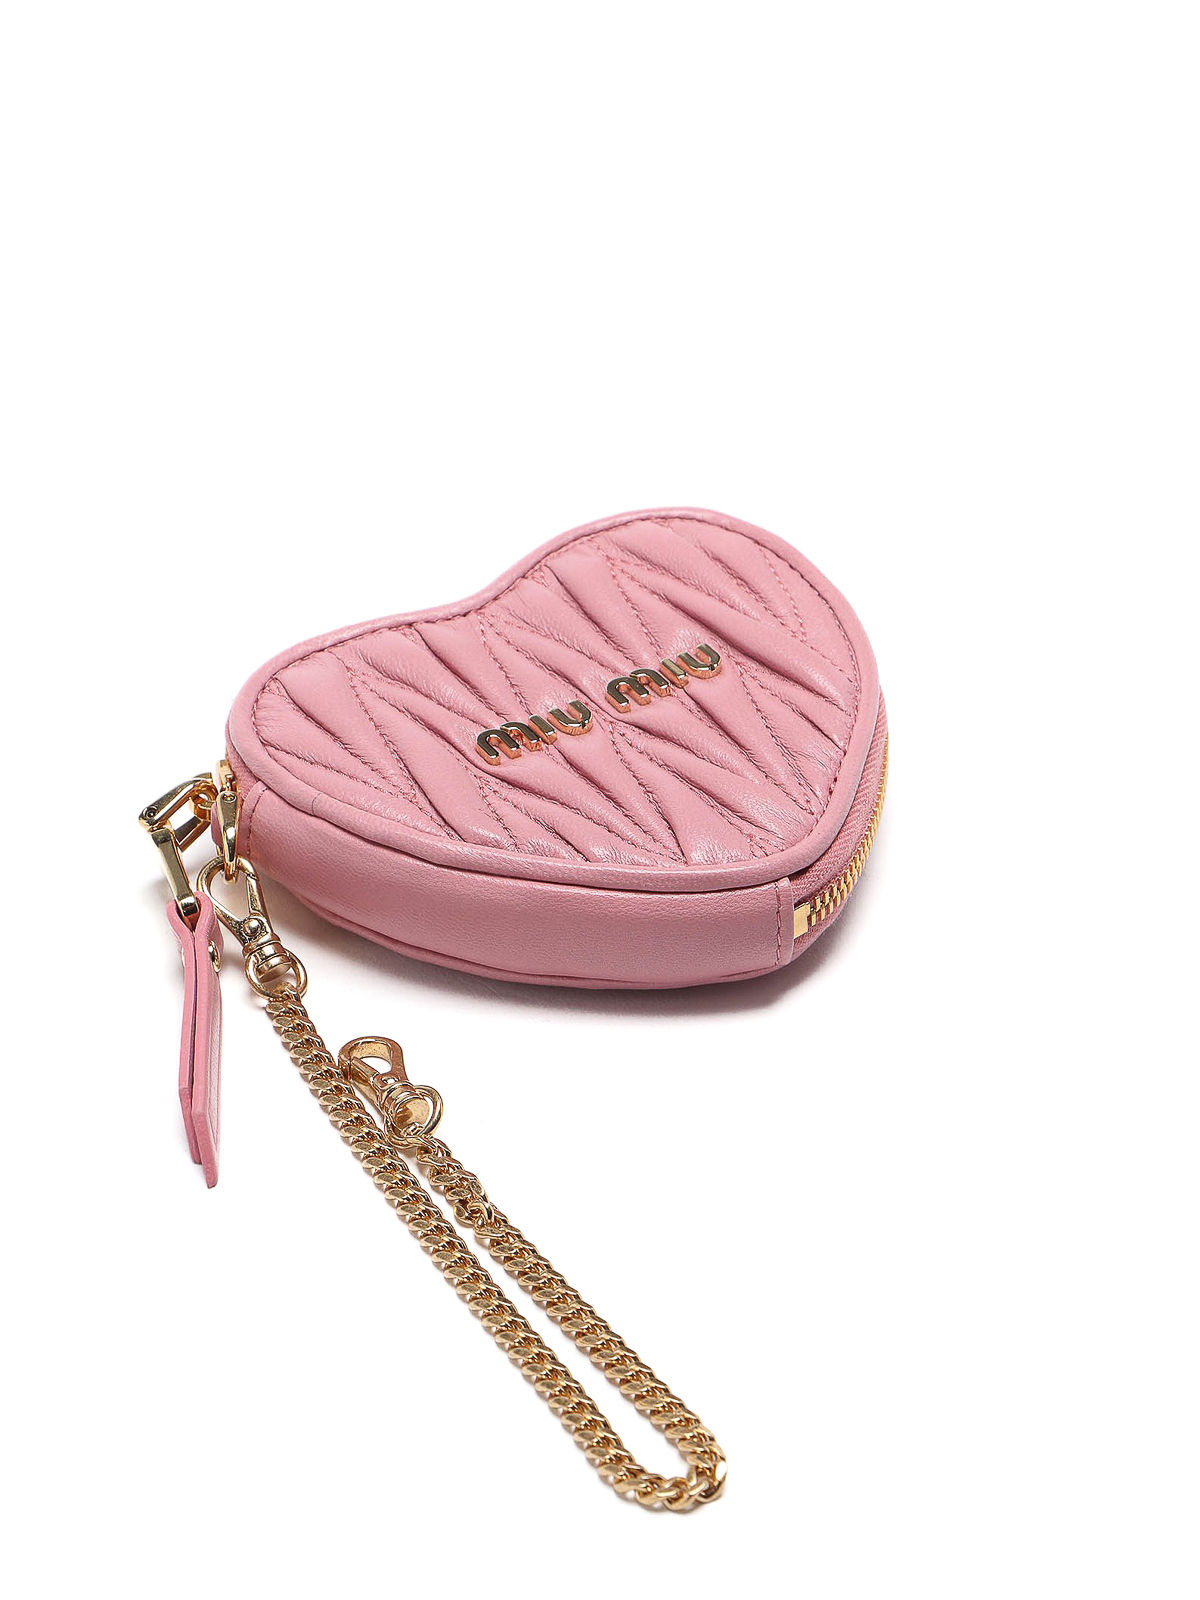 Wallets & purses Miu Miu - Leather heart-shaped trick - 5TL358N88F0028